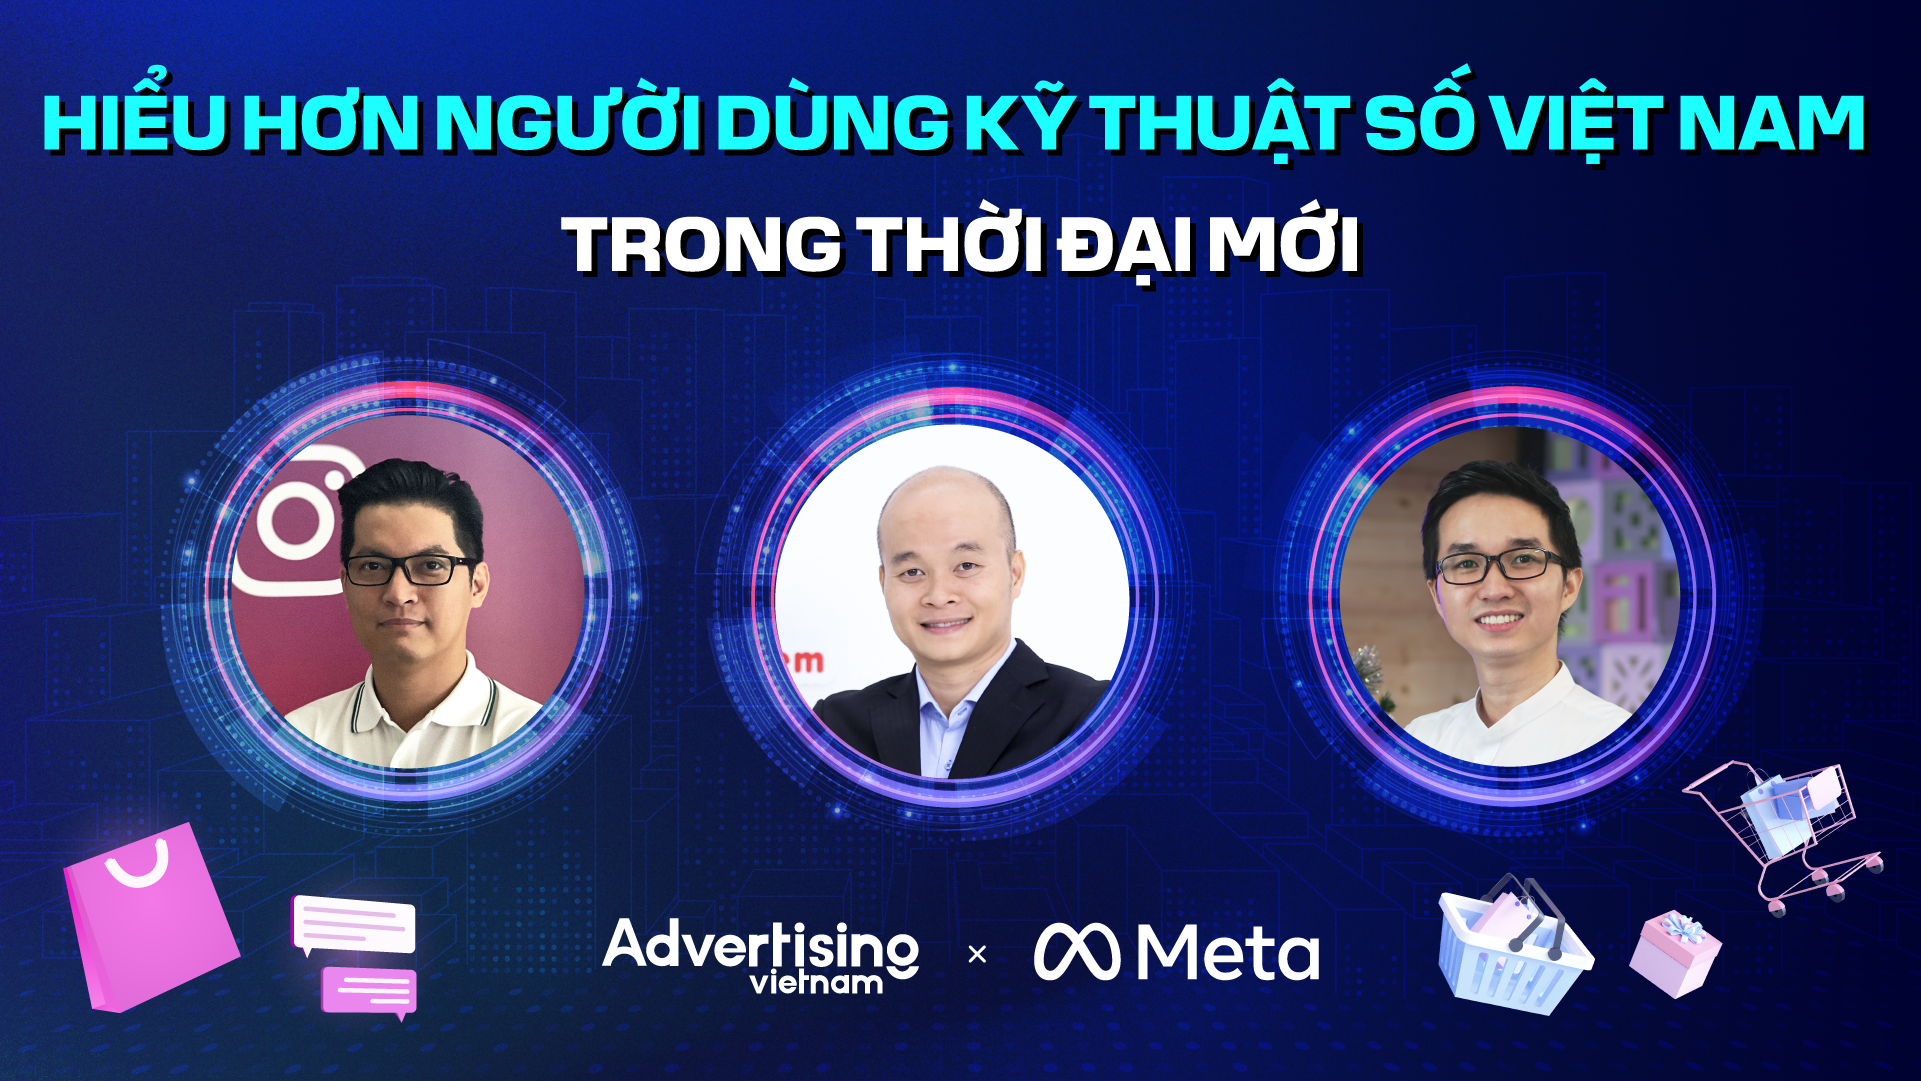 Hiểu hơn hành vi người dùng kỹ thuật số Việt Nam trong thời đại mới